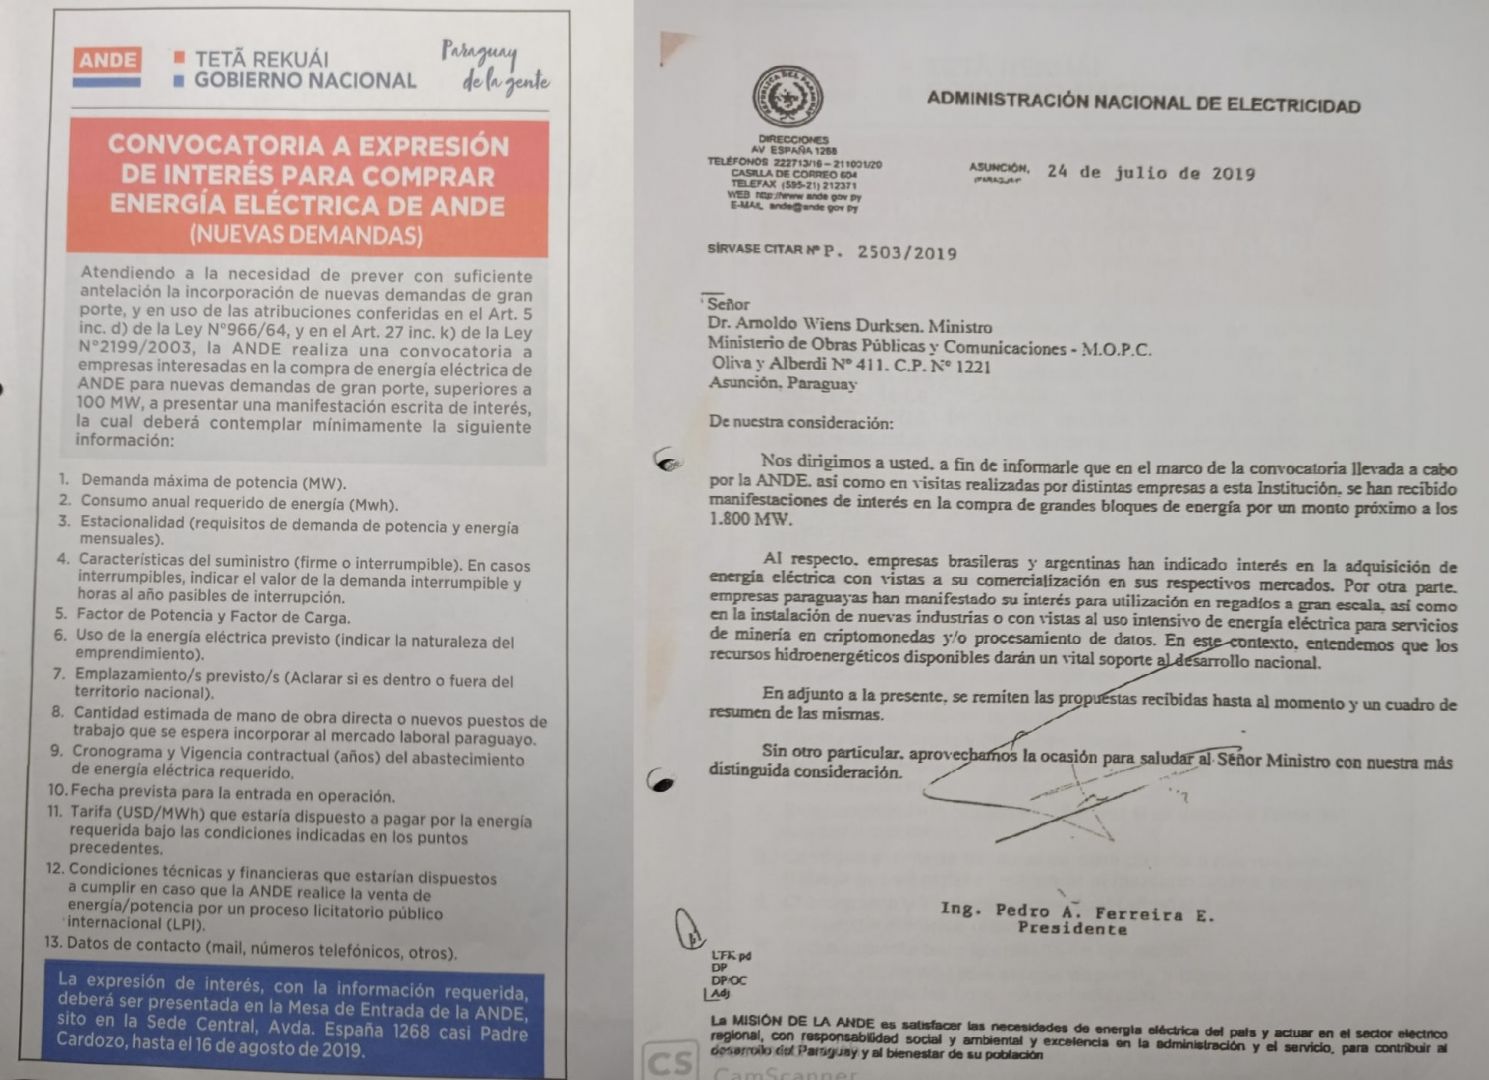 En junio de 2019, la ANDE publicó esta convocatoria a través de varios diarios. Un mes después el ex titular de la ANDE, Pedro Ferreira informa al Ministro Arnoldo Wiens sobre las ofertas recibidas.